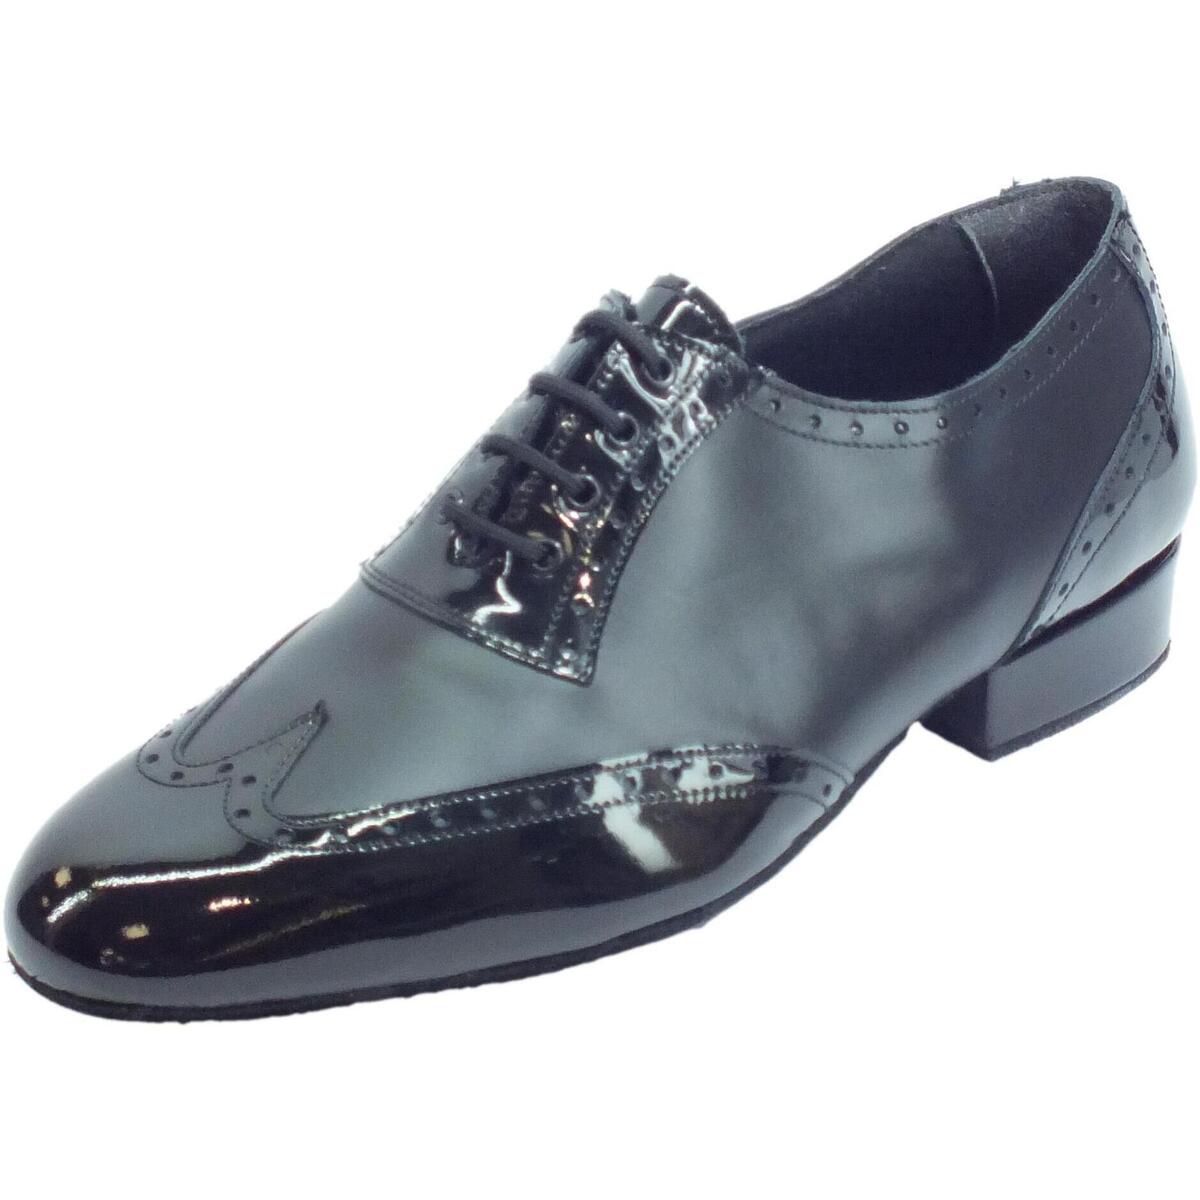 Scarpe Uomo Sandali sport Vitiello Dance Shoes 10B Nappa/Vernice nero t20 fondo Nero